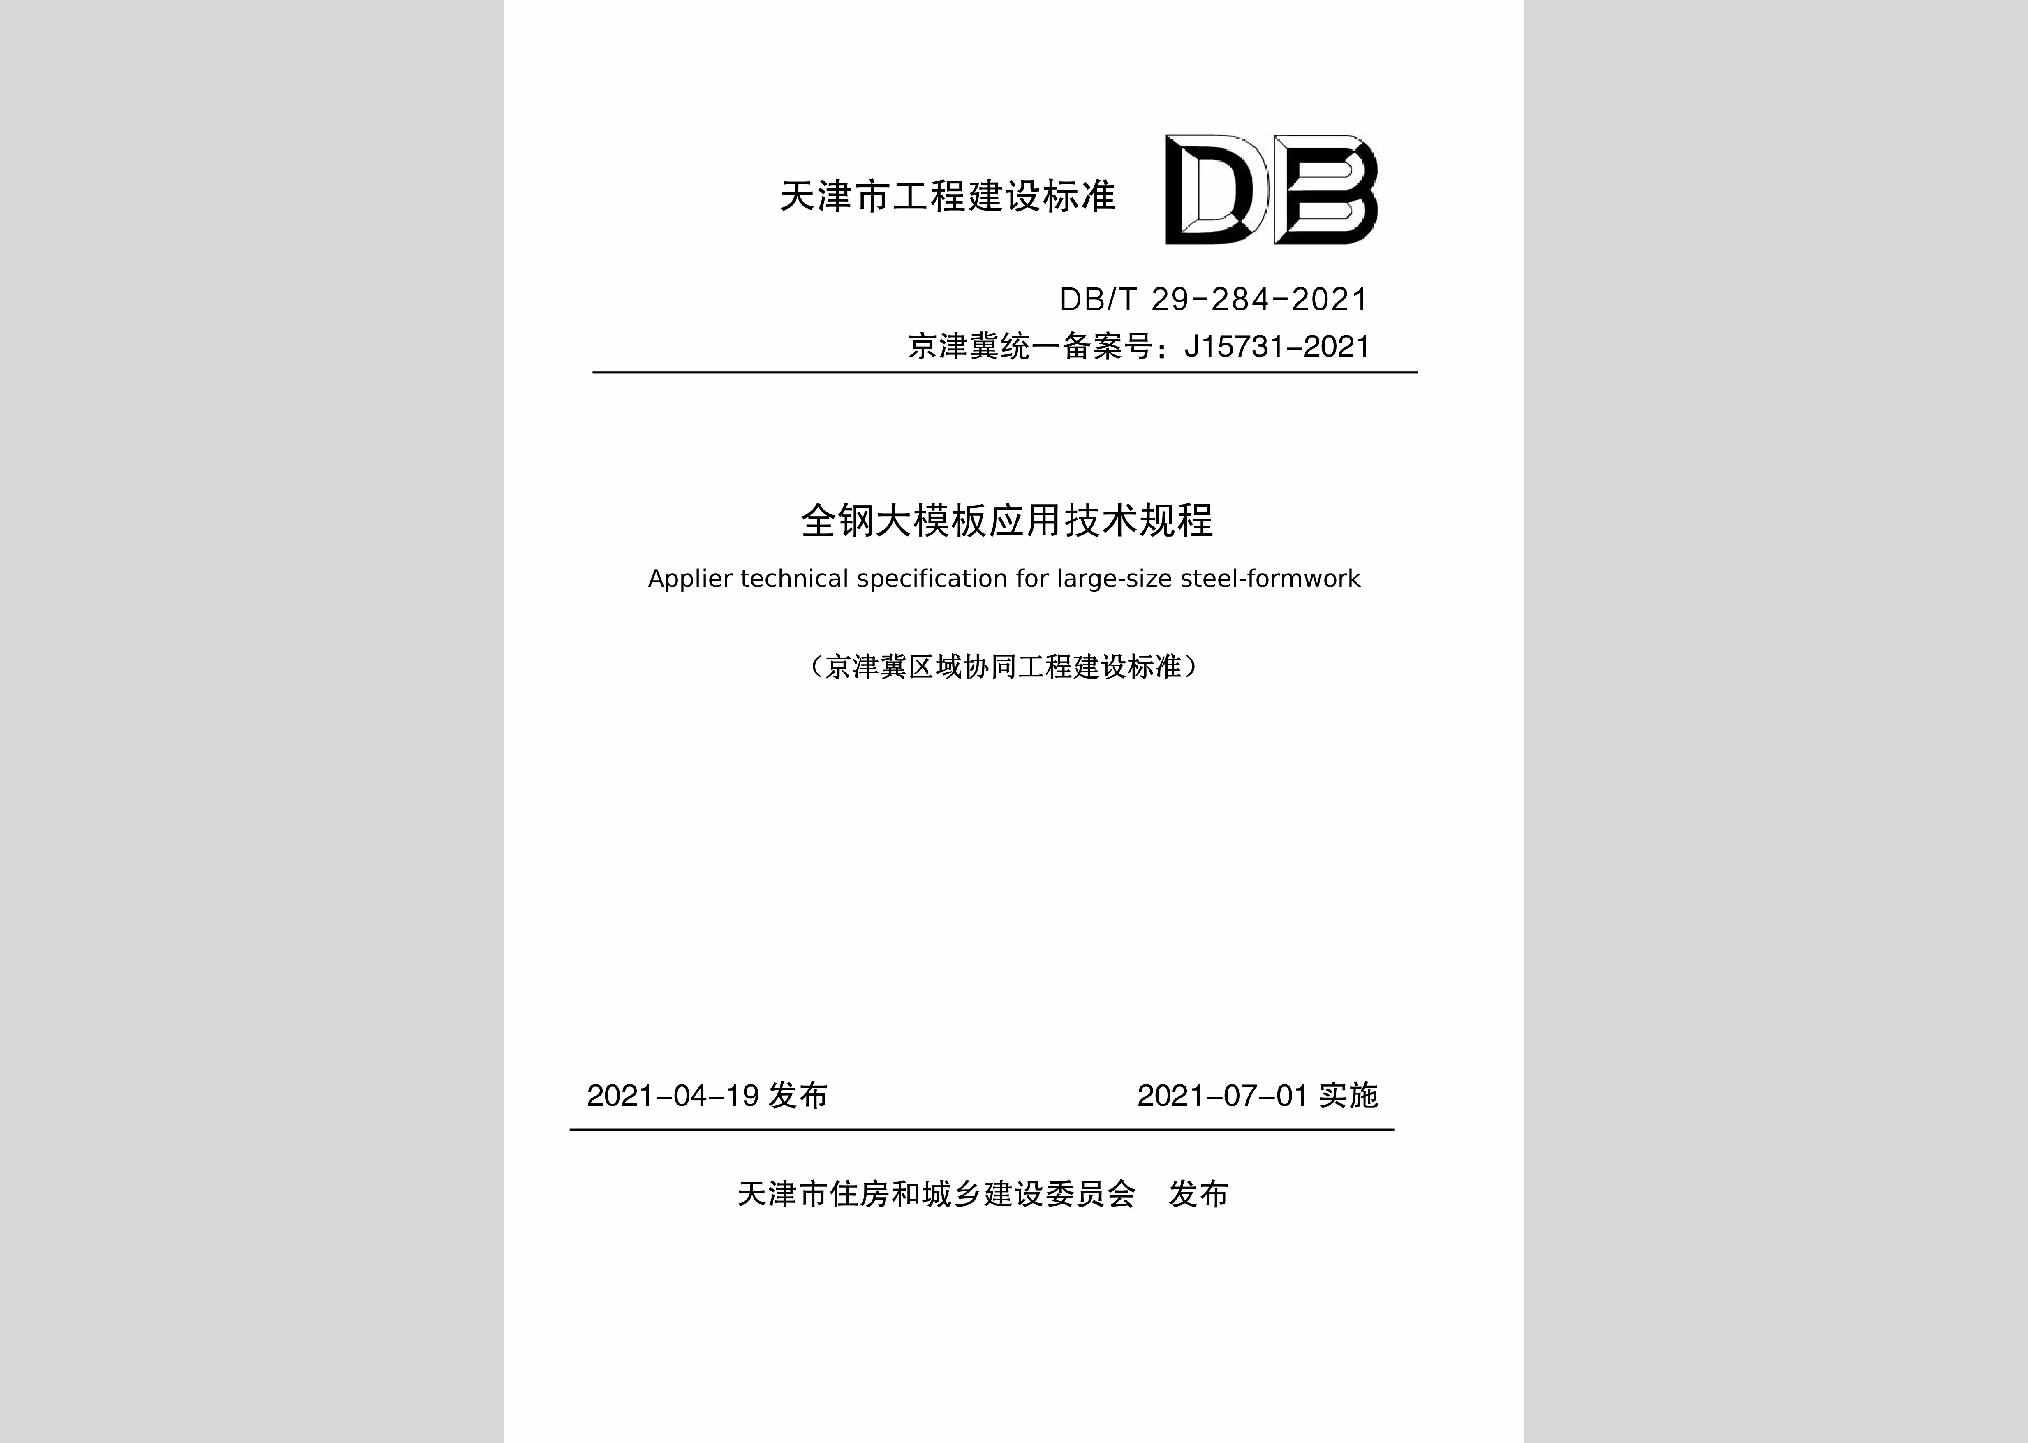 DB/T29-284-2021：全钢大模板应用技术规程